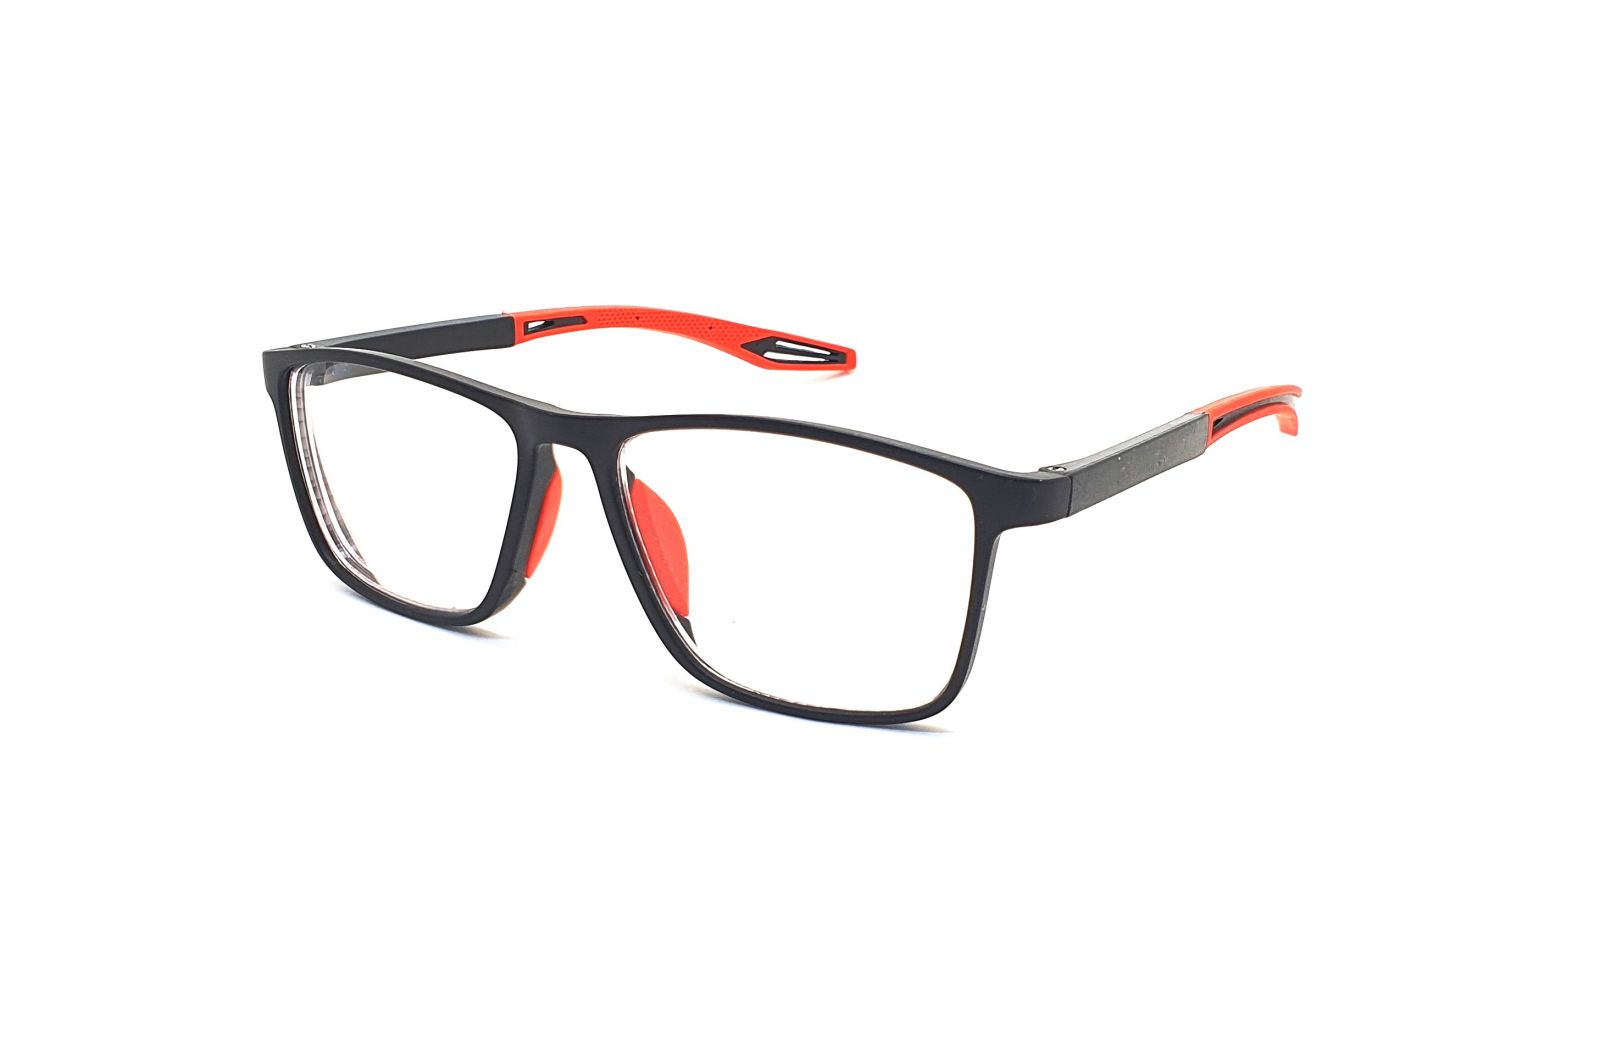 Samozabarvovací dioptrické brýle F04 / -3,00 black/red